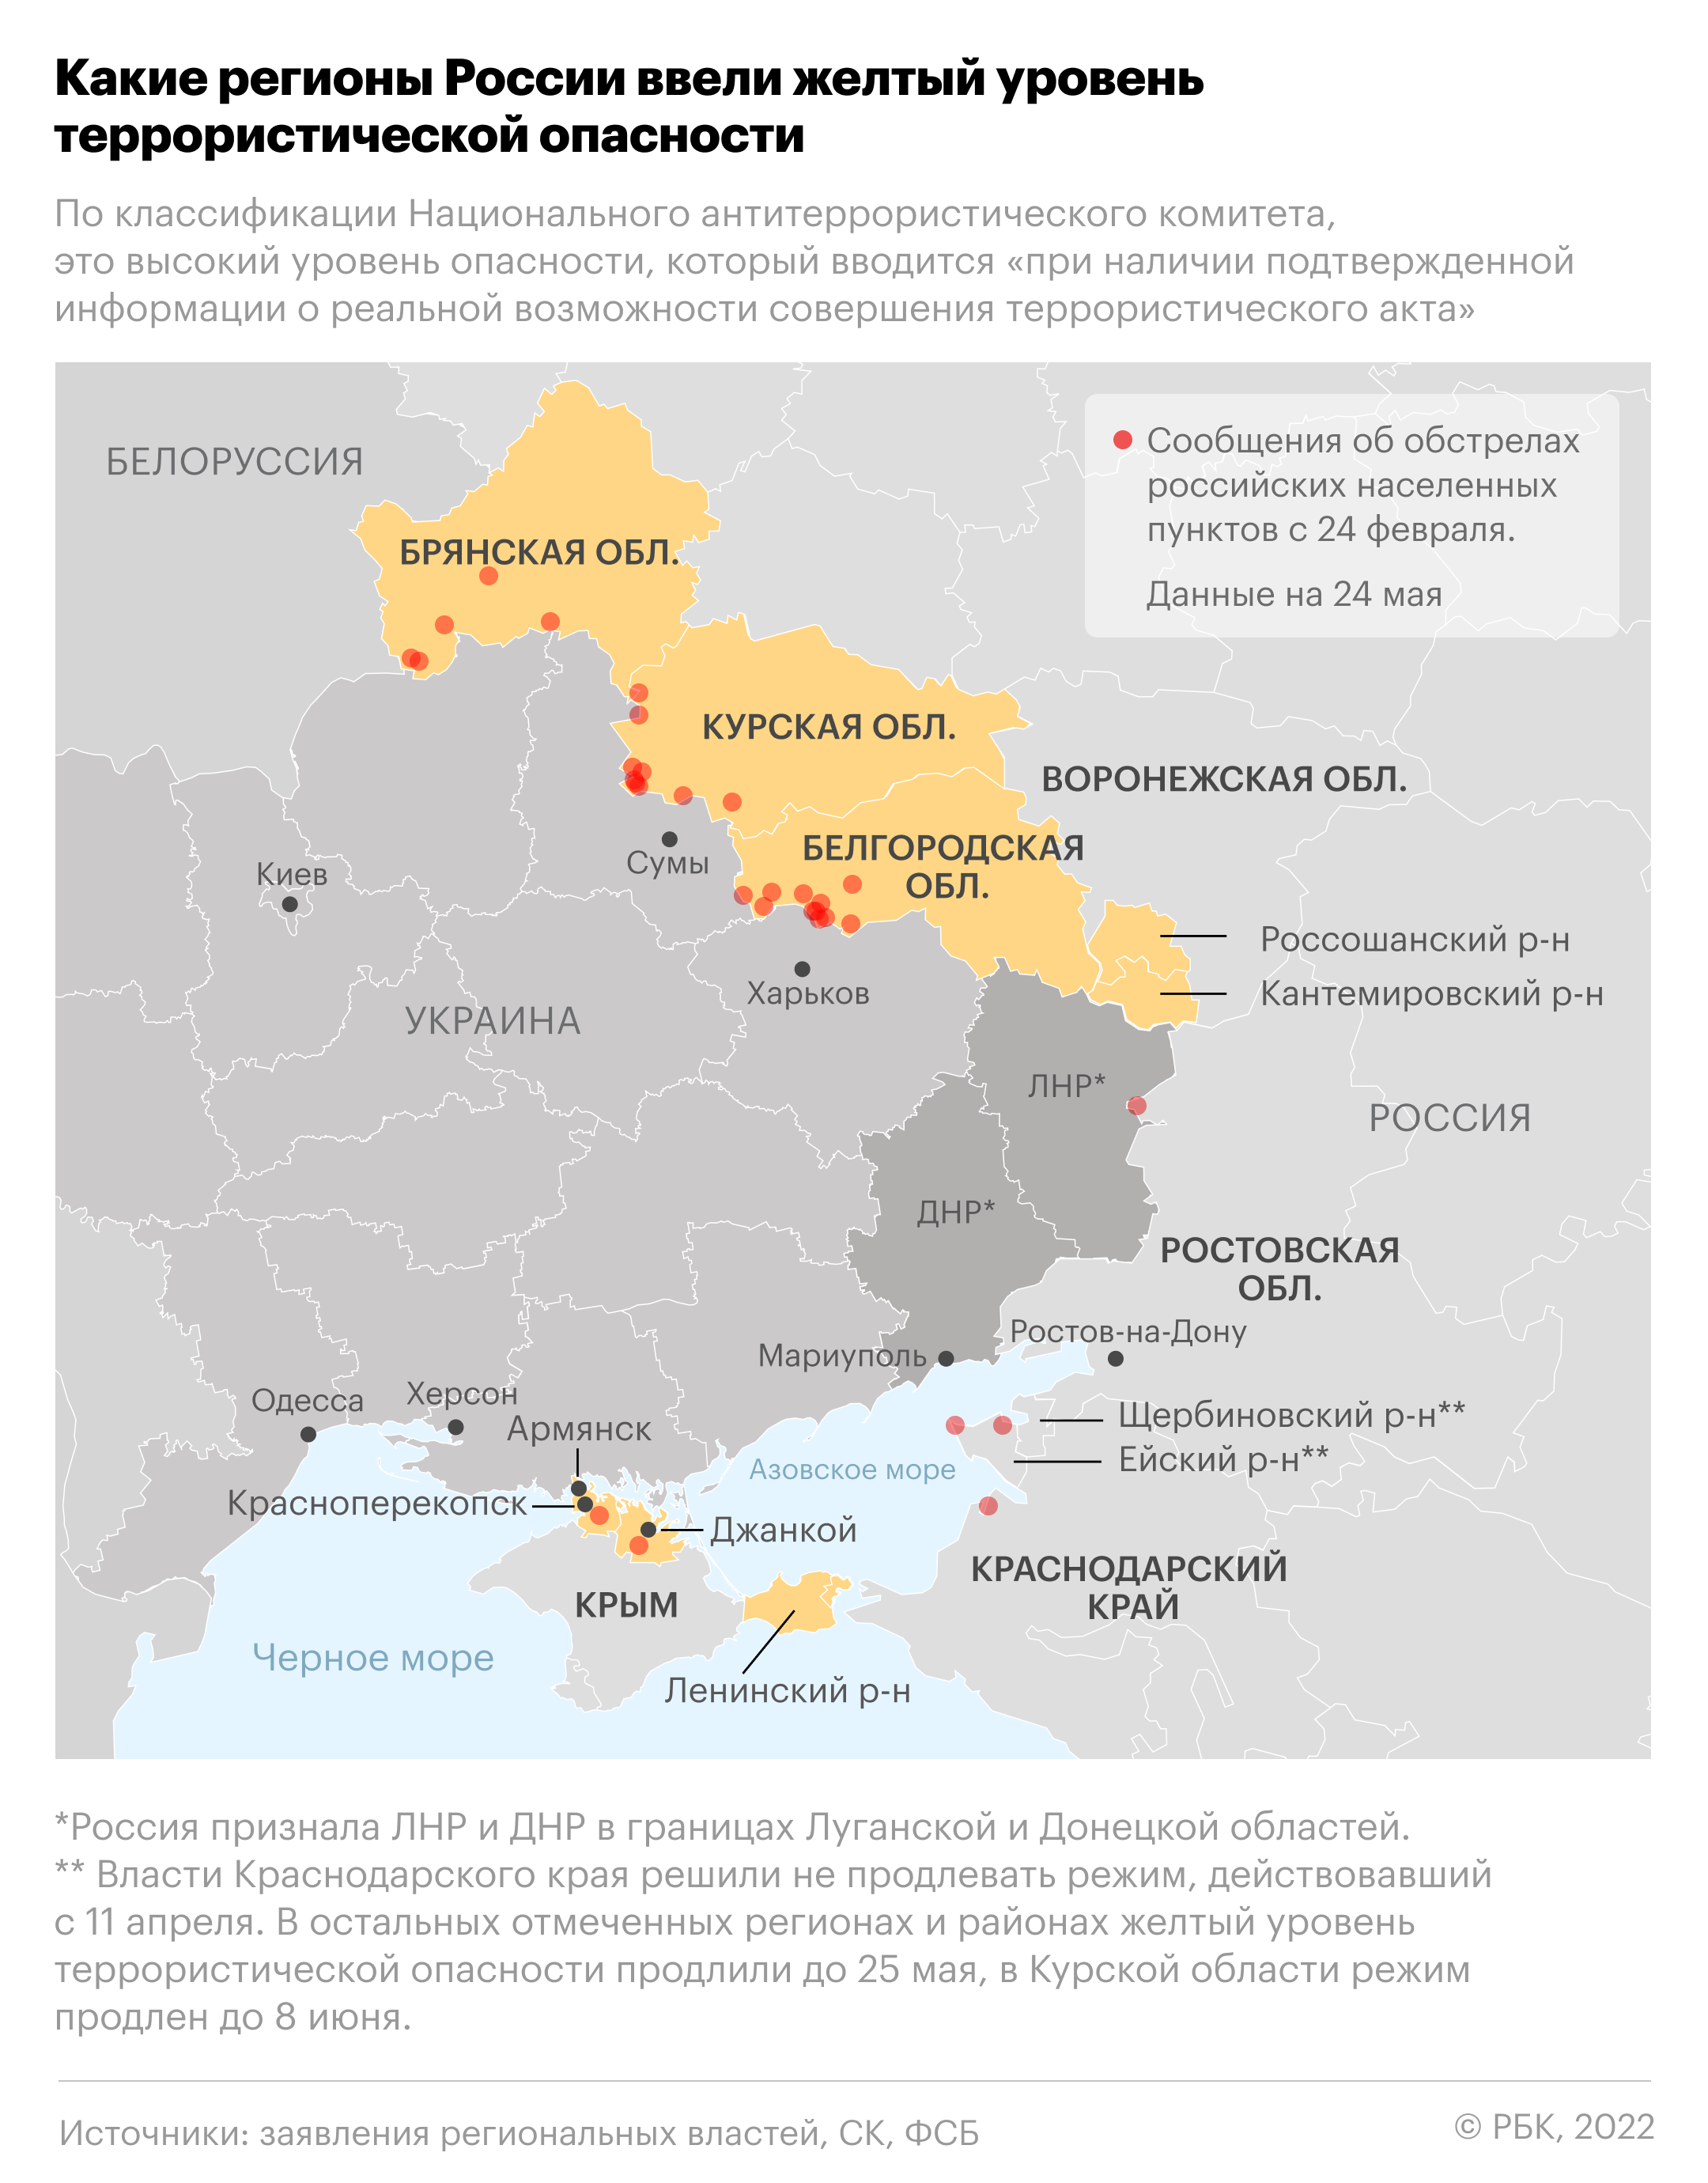 Какие приграничные пункты попали под обстрел со стороны Украины. Карта"/>













